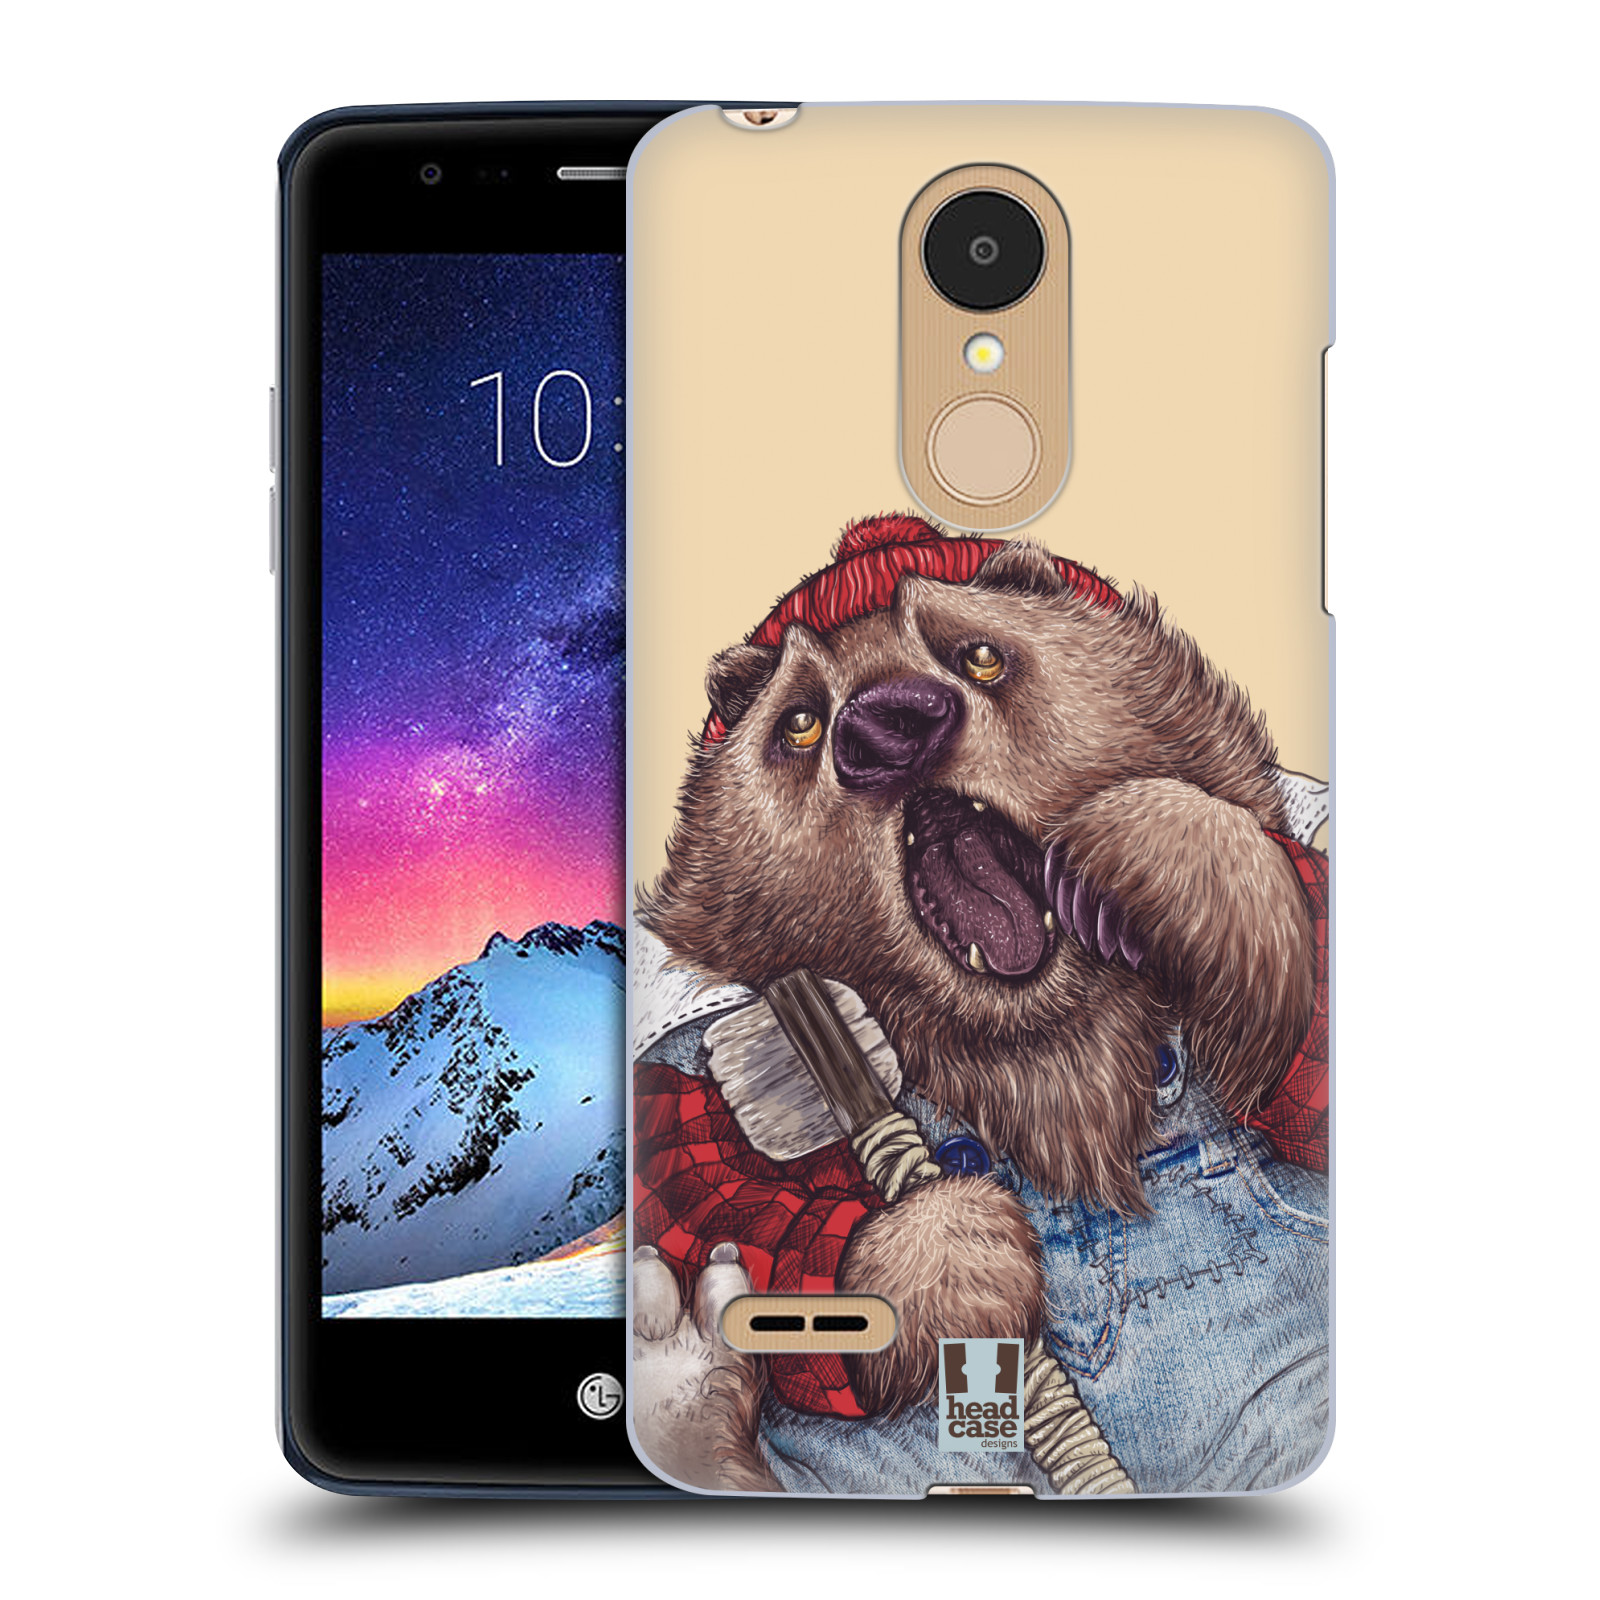 HEAD CASE plastový obal na mobil LG K9 / K8 2018 vzor Kreslená zvířátka medvěd